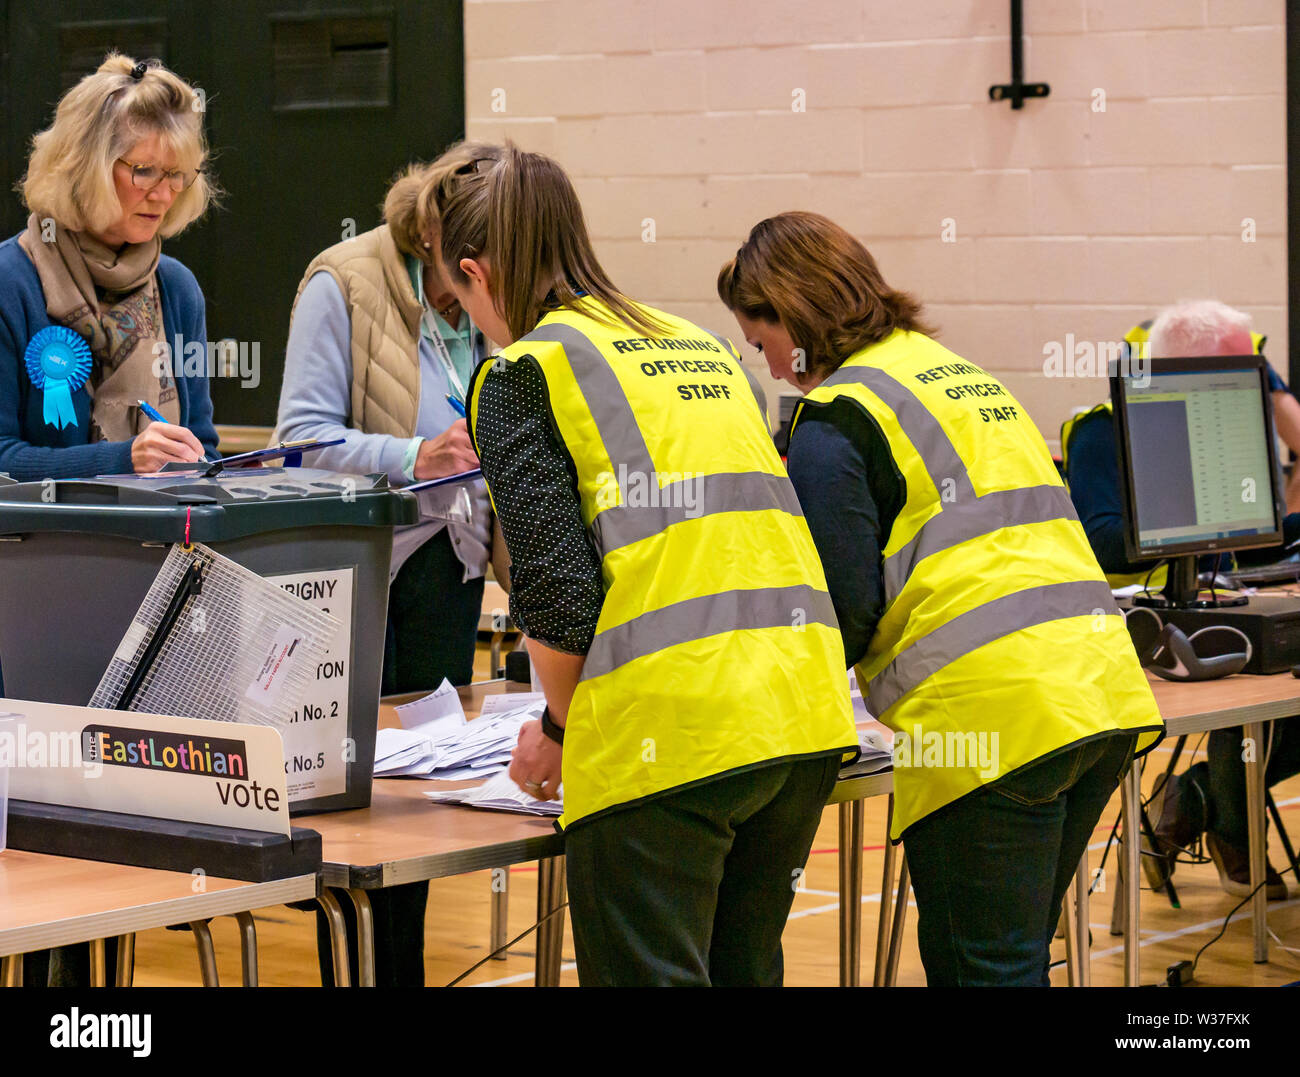 El recuento de votos, las elecciones del Consejo del Distrito 5, Haddington & Lammermuir por elección, East Lothian Mayo de 2019, Escocia, Reino Unido Foto de stock